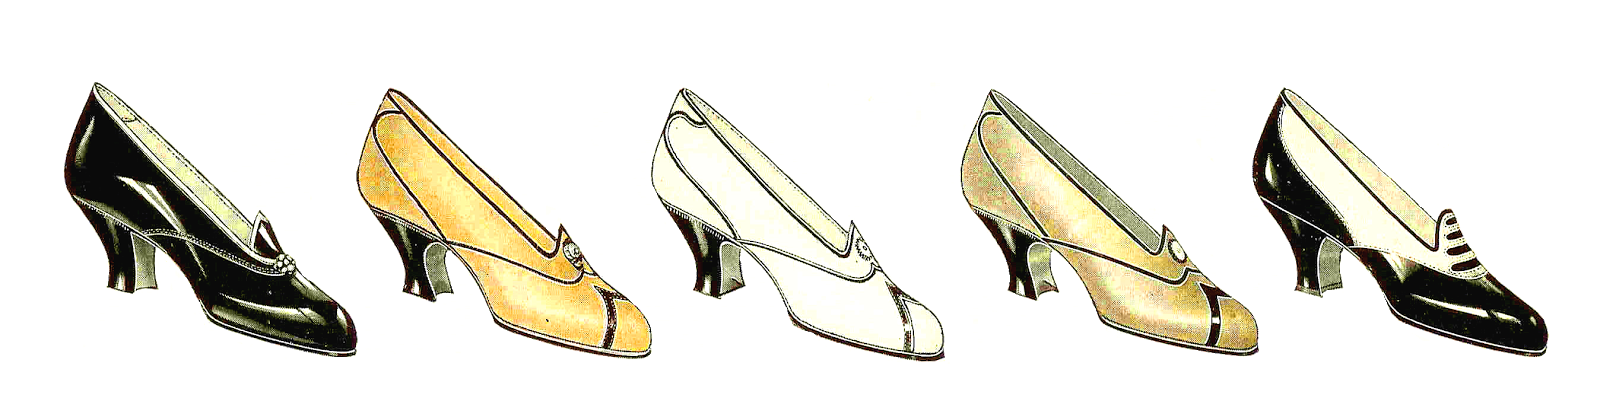 Antique Images: Free Fashion Graphics: 5 Vintage Women's Shoes ...